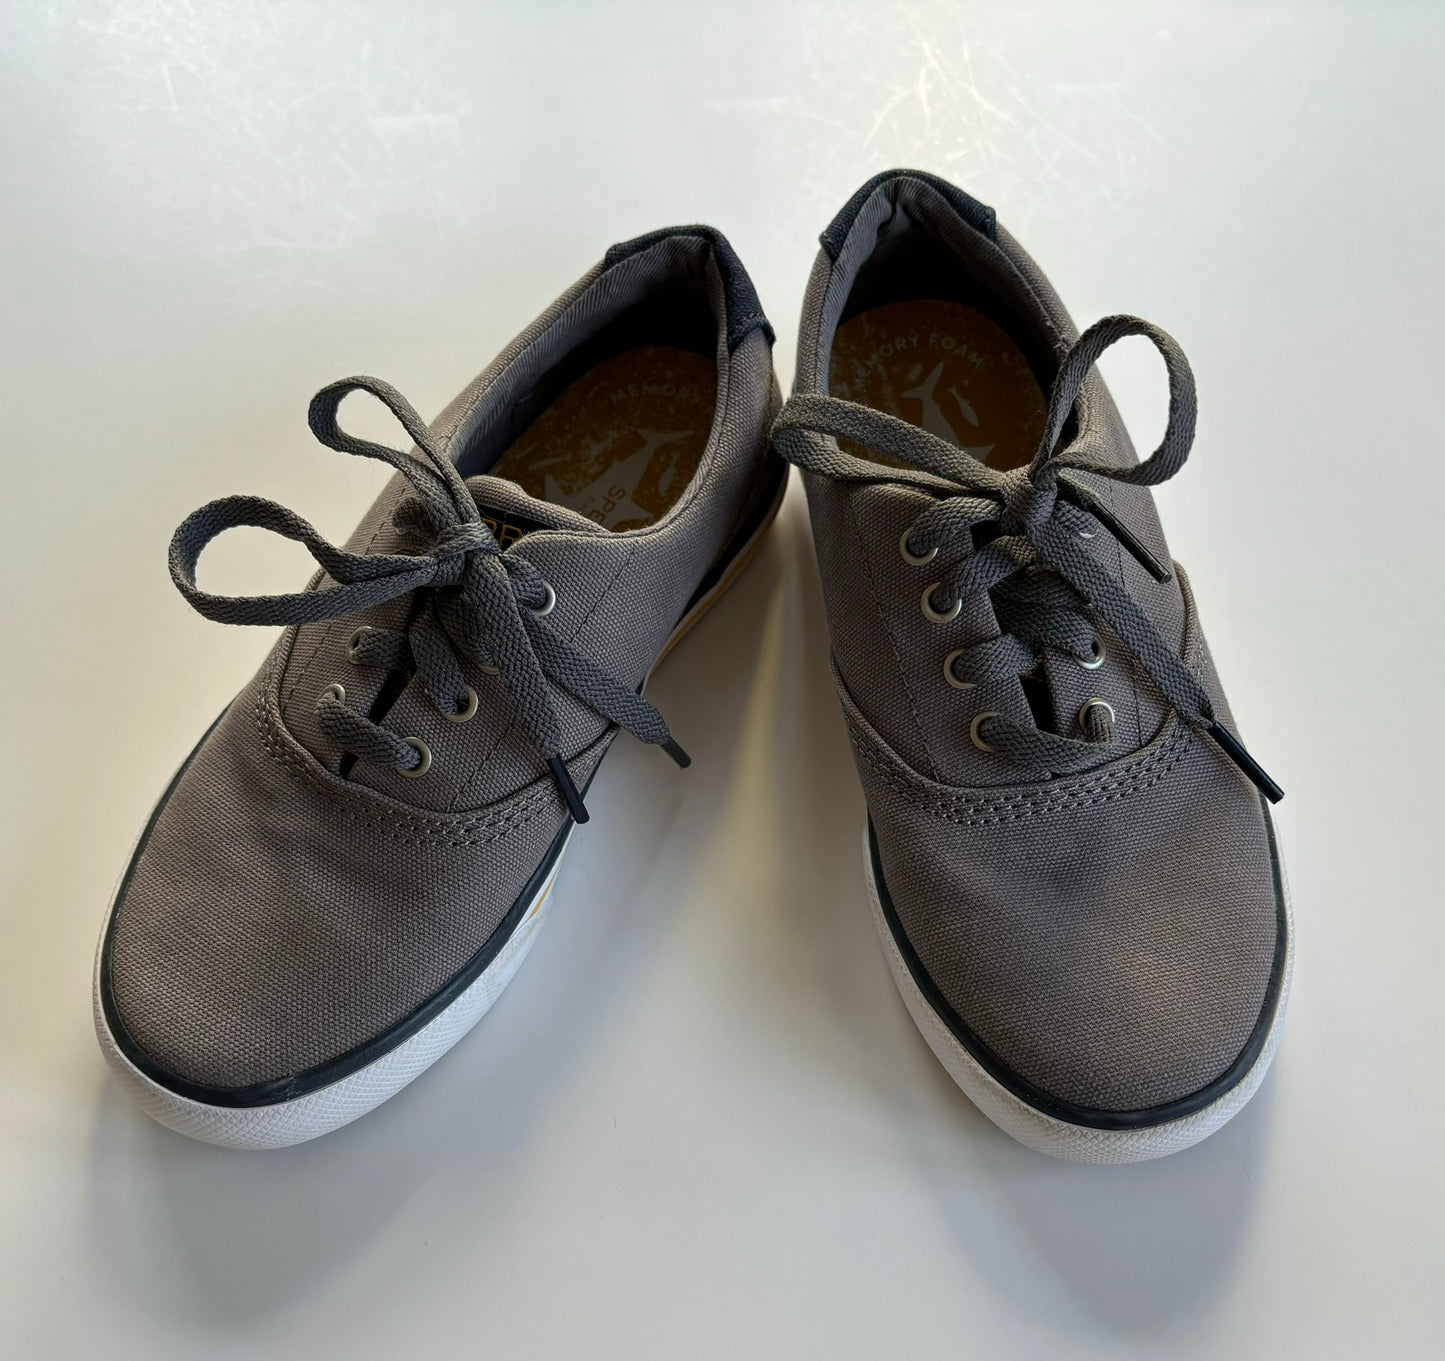 Boys Size 13.5 Sperry Striper II Boat Shoes Gray